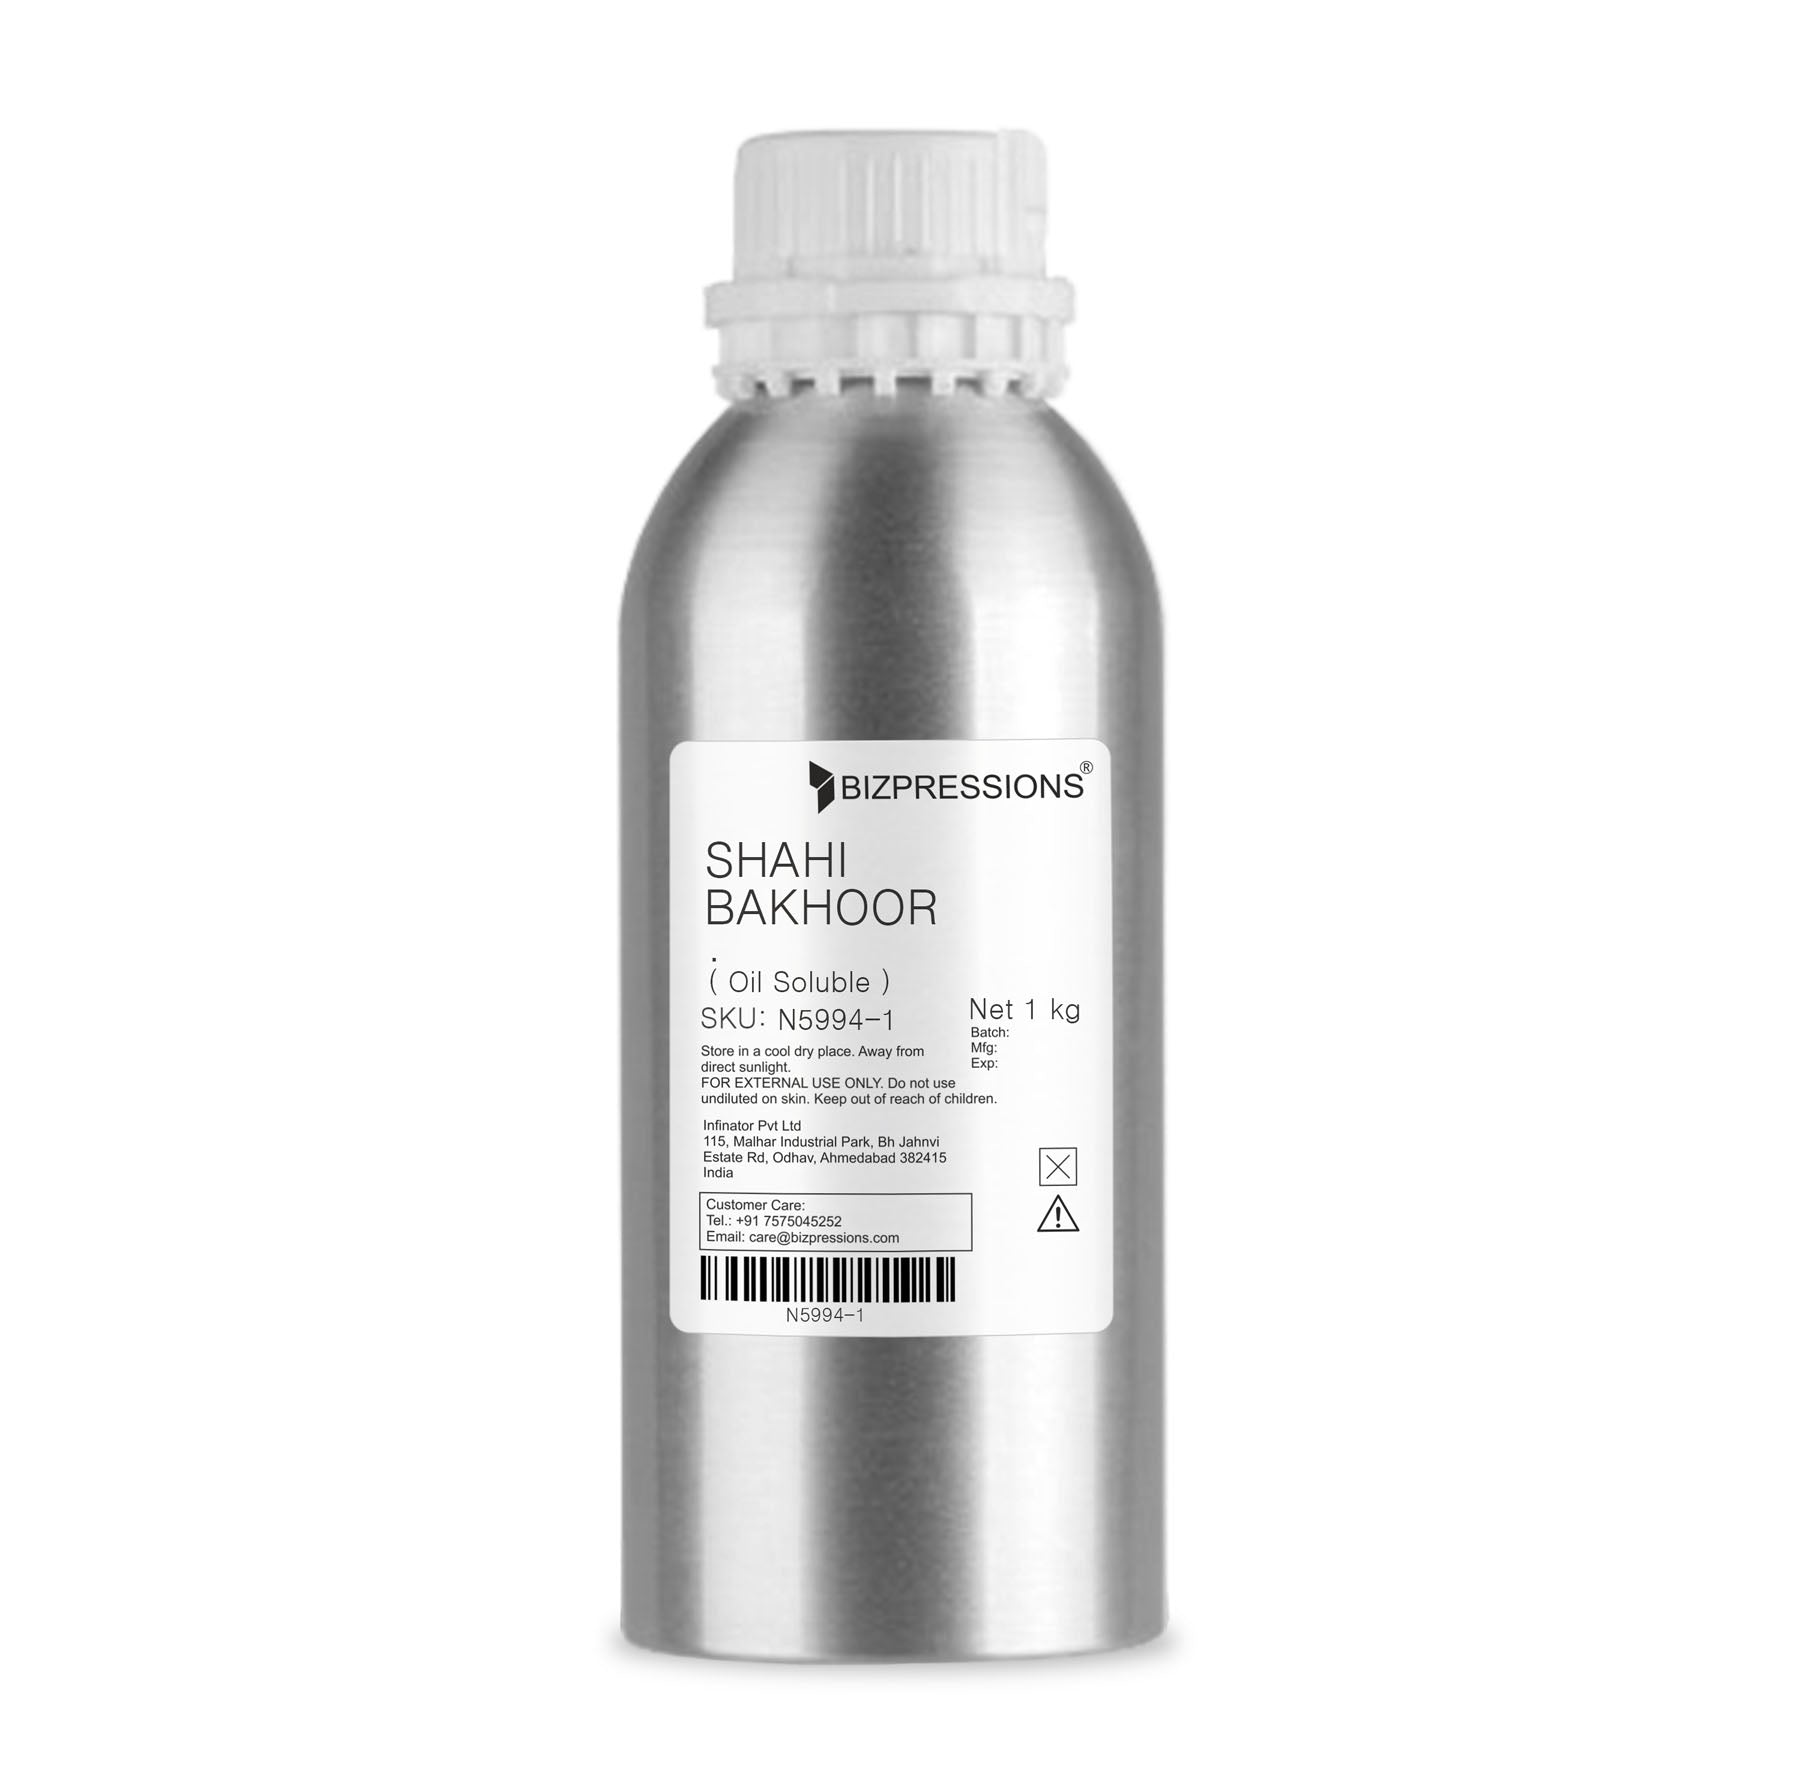 SHAHI BAKHOOR - Fragrance ( Oil Soluble ) - 1 kg